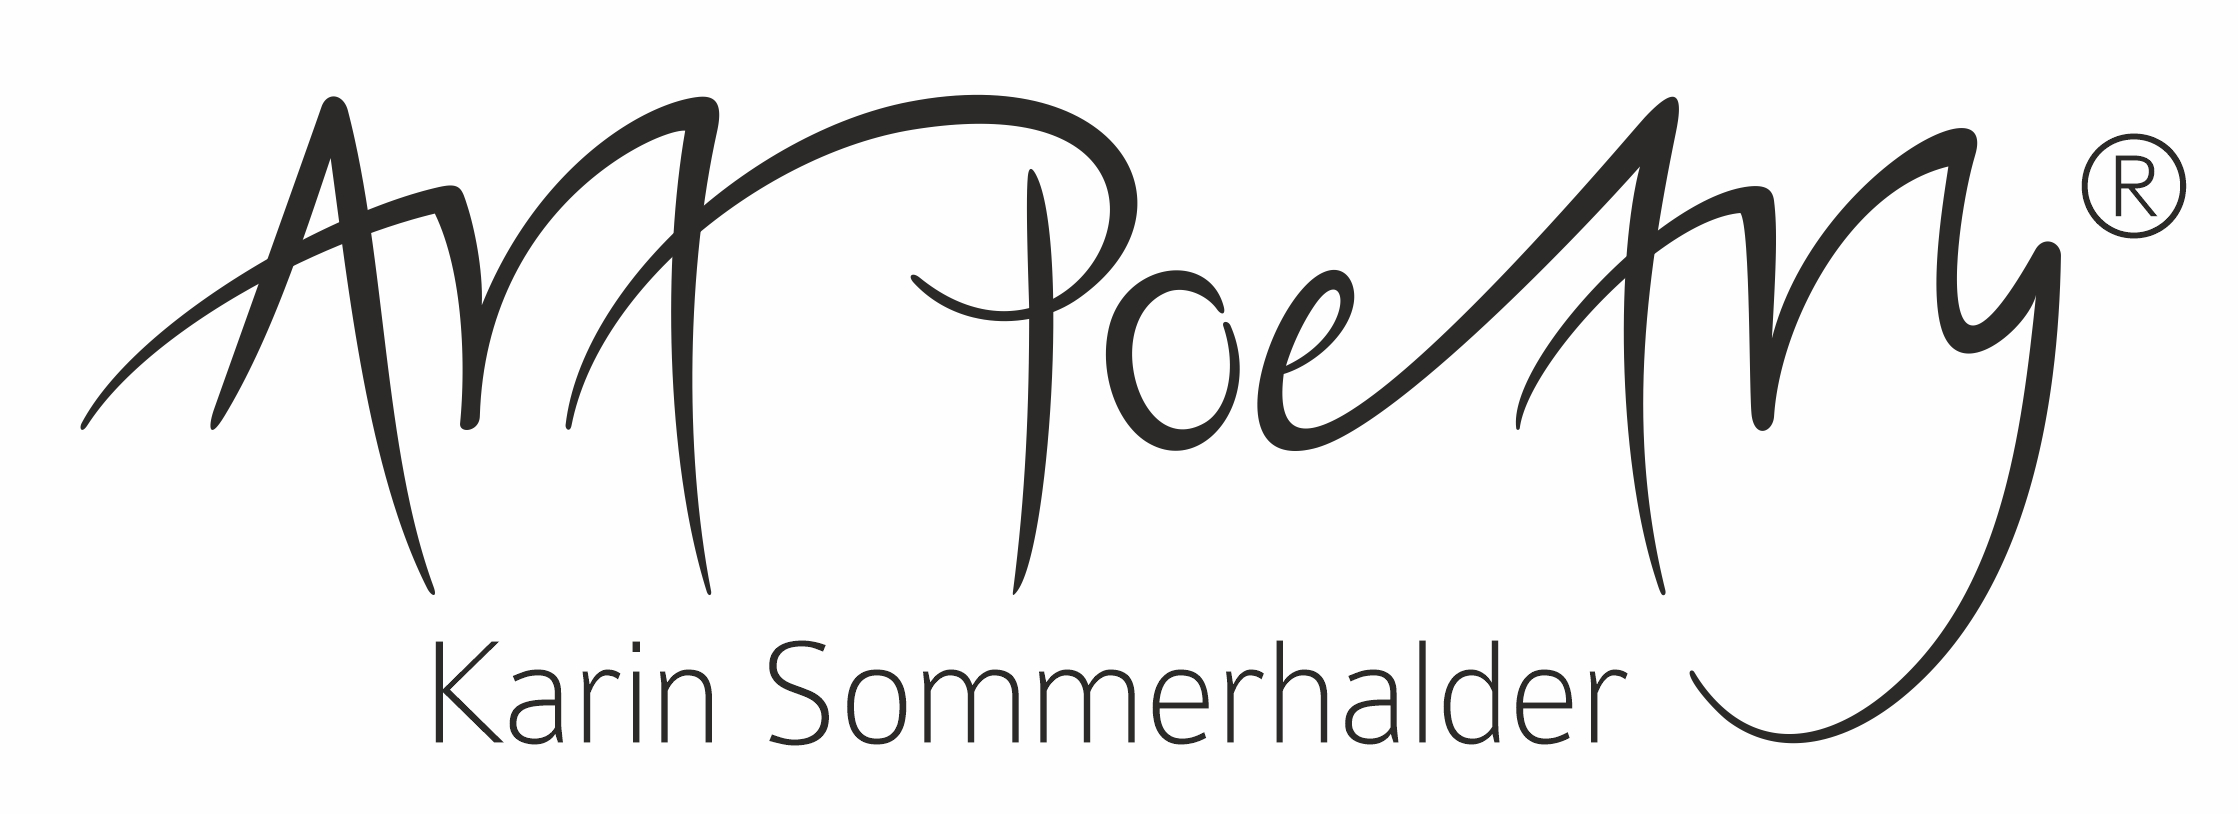 Art Poetry | Handgeschriebene Worte von Karin Sommerhalder digital zu Wortgeflechten verwoben